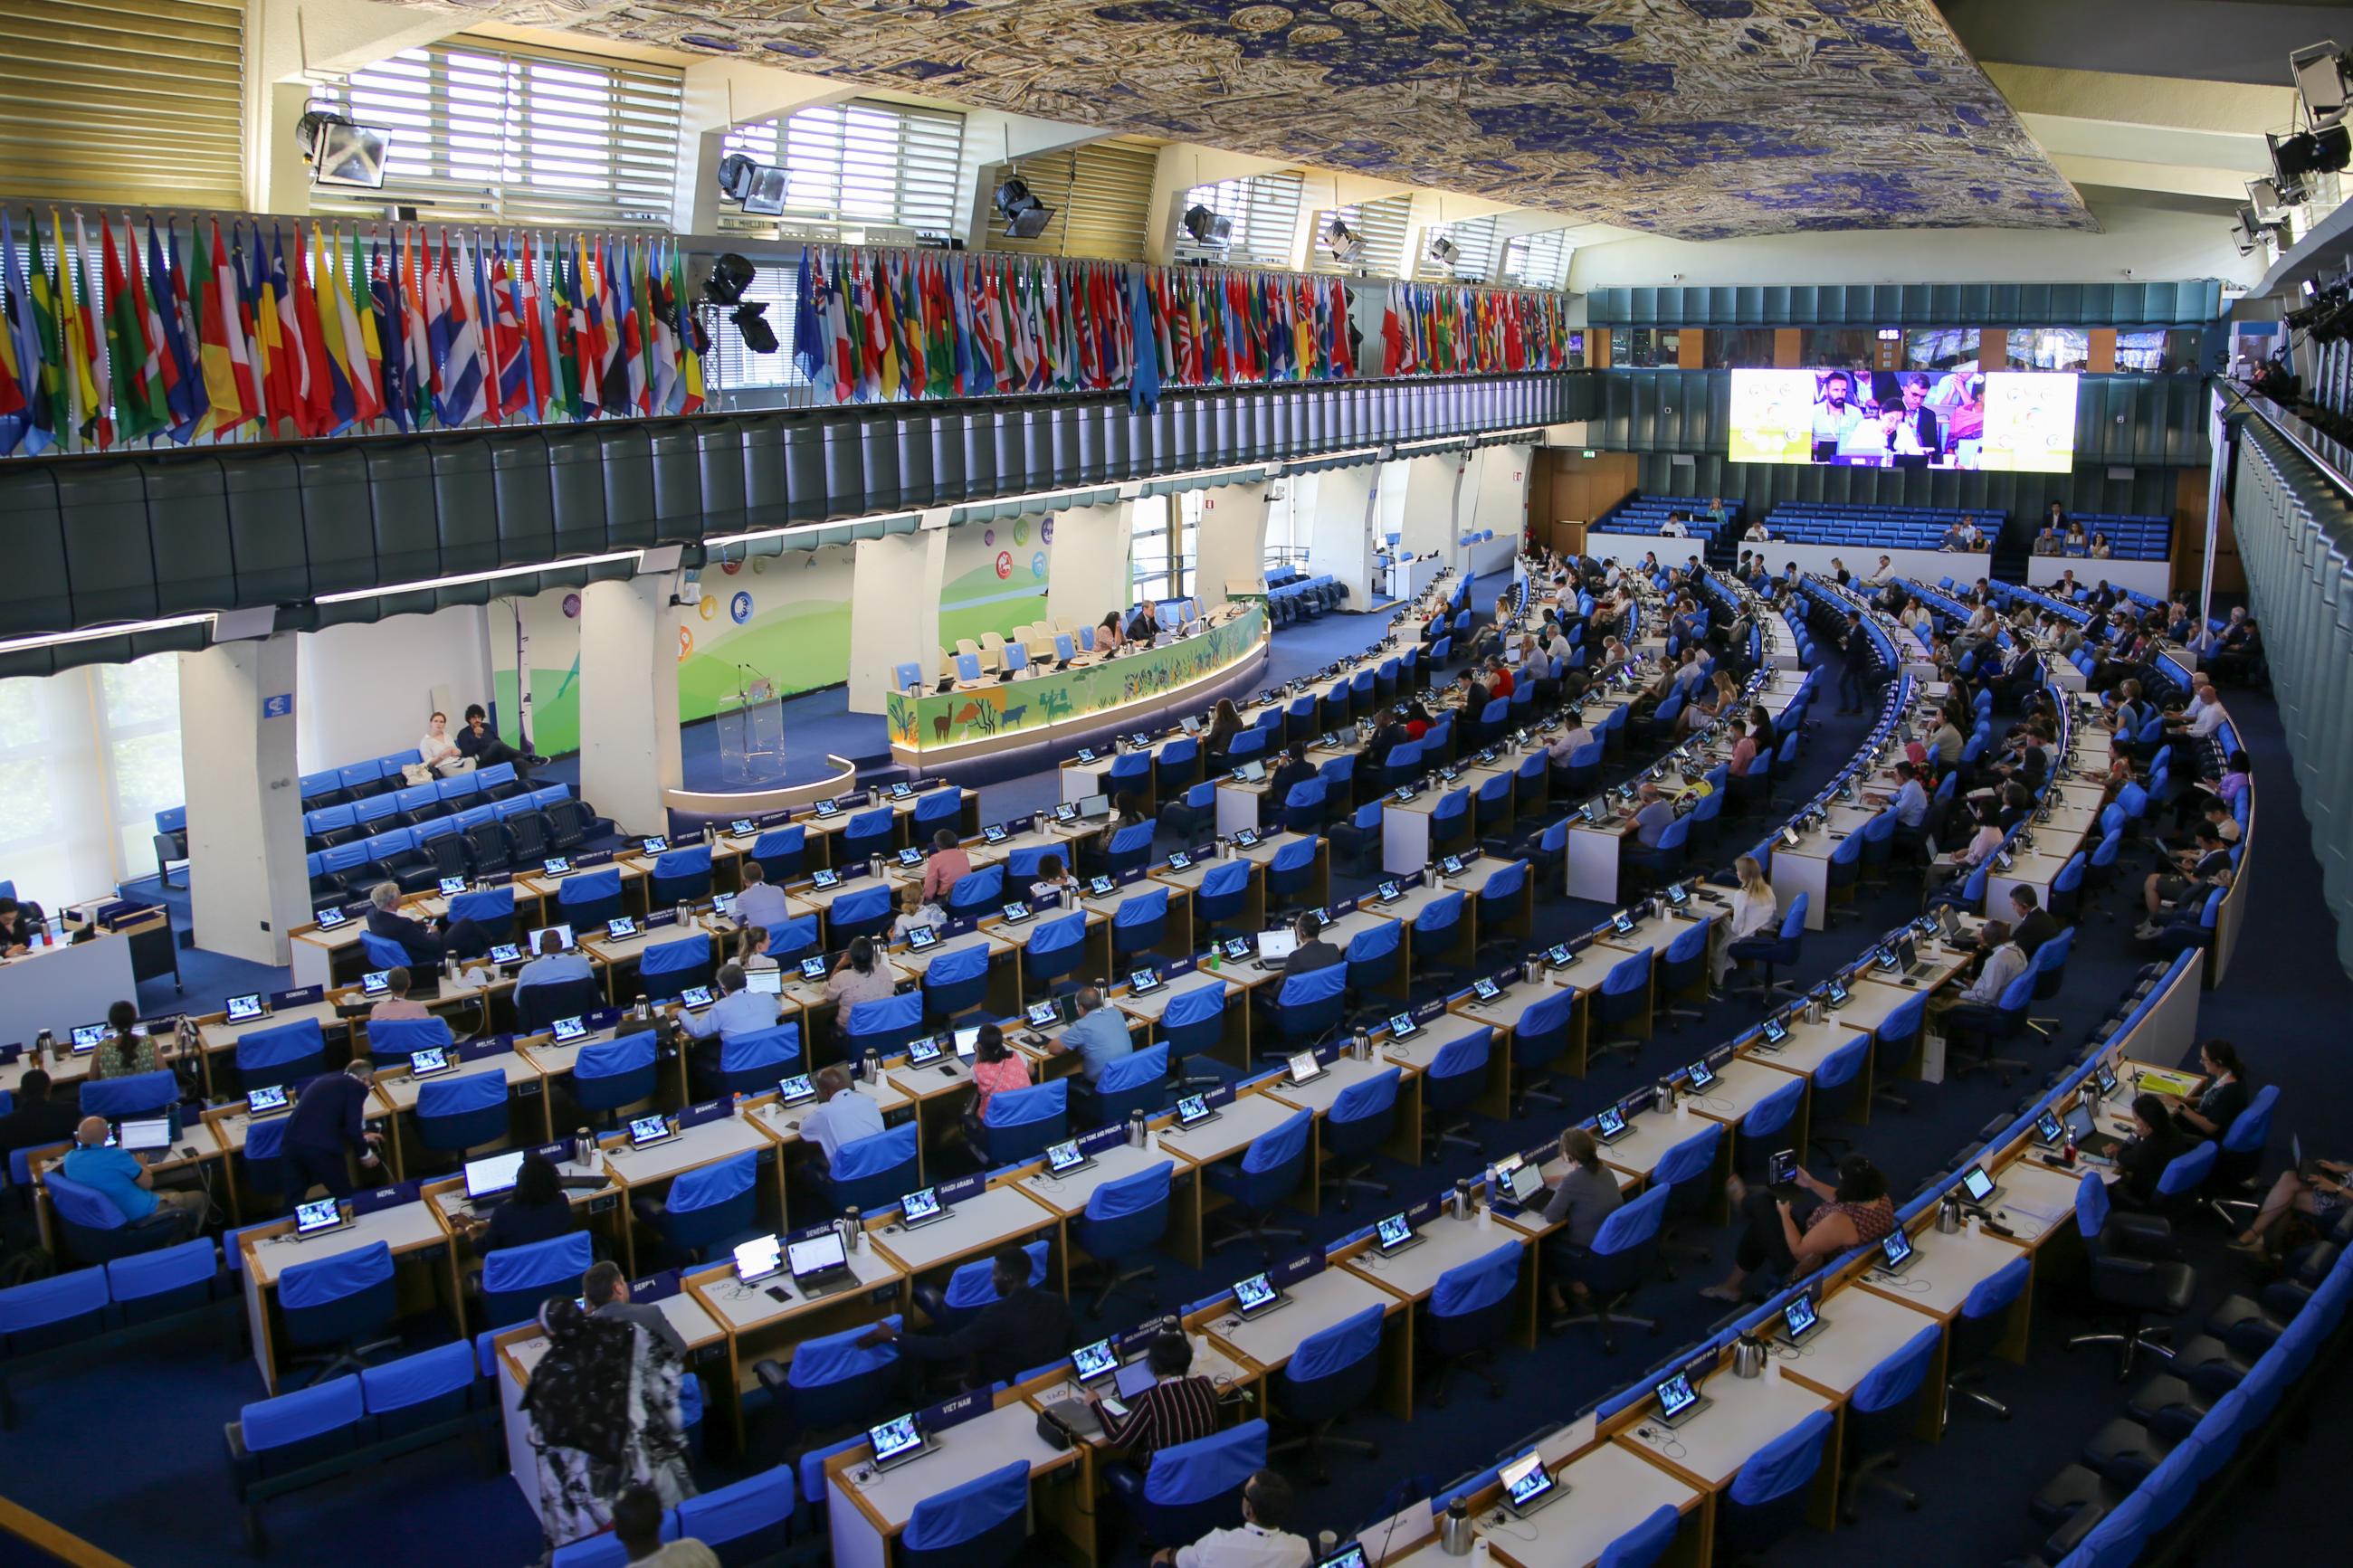 Vogelperspektive des Sitzungssaals der FAO mit blauen Sitzreihen.